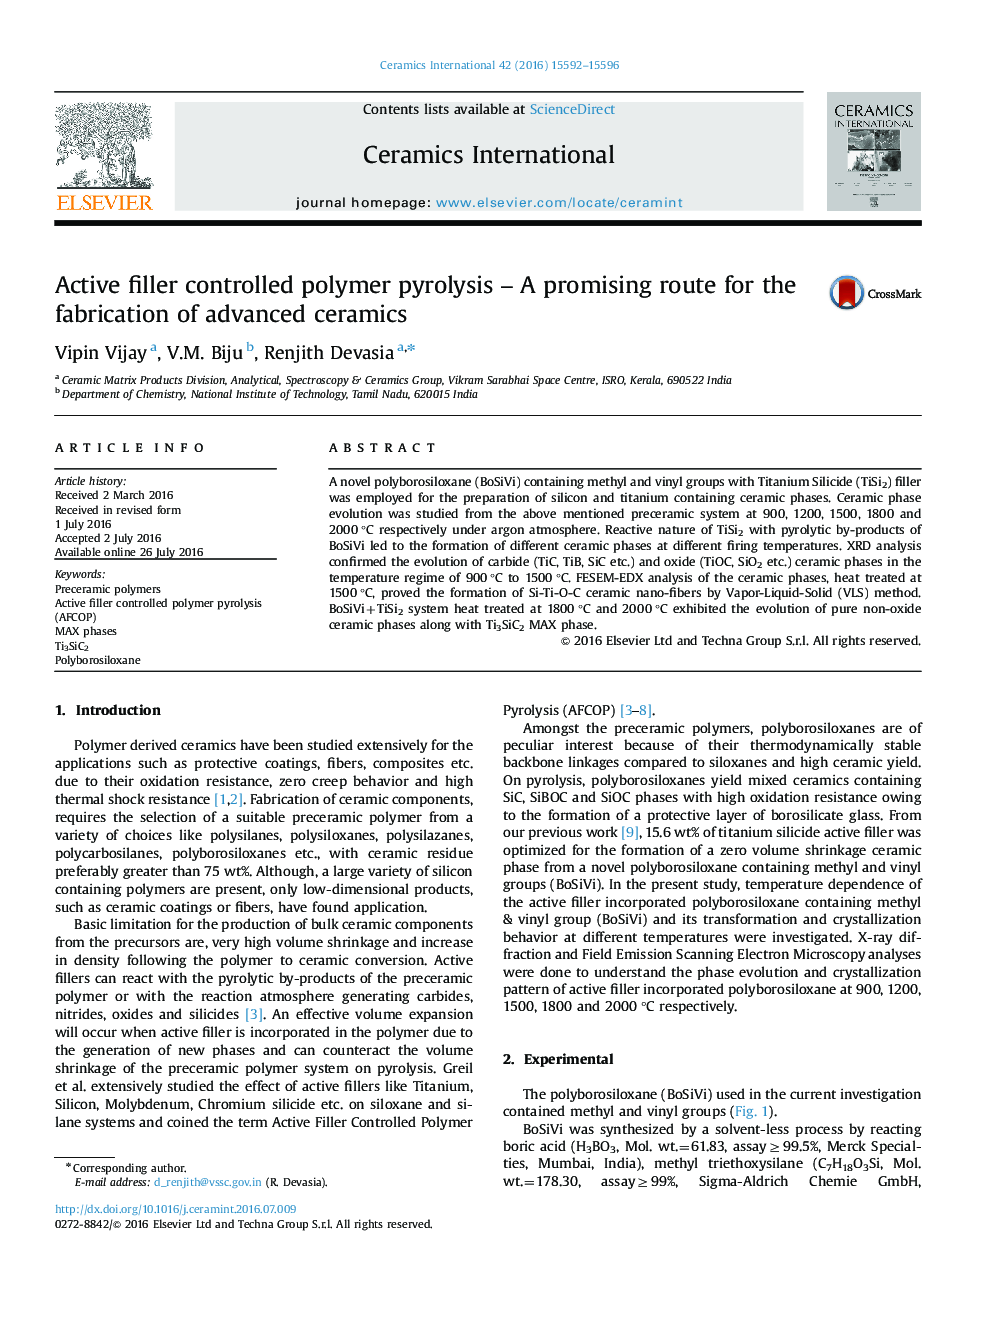 پیرولیز پلیمر کنترل شده پرکننده فعال مسیر امیدوار کننده برای ساخت سرامیک پیشرفته 